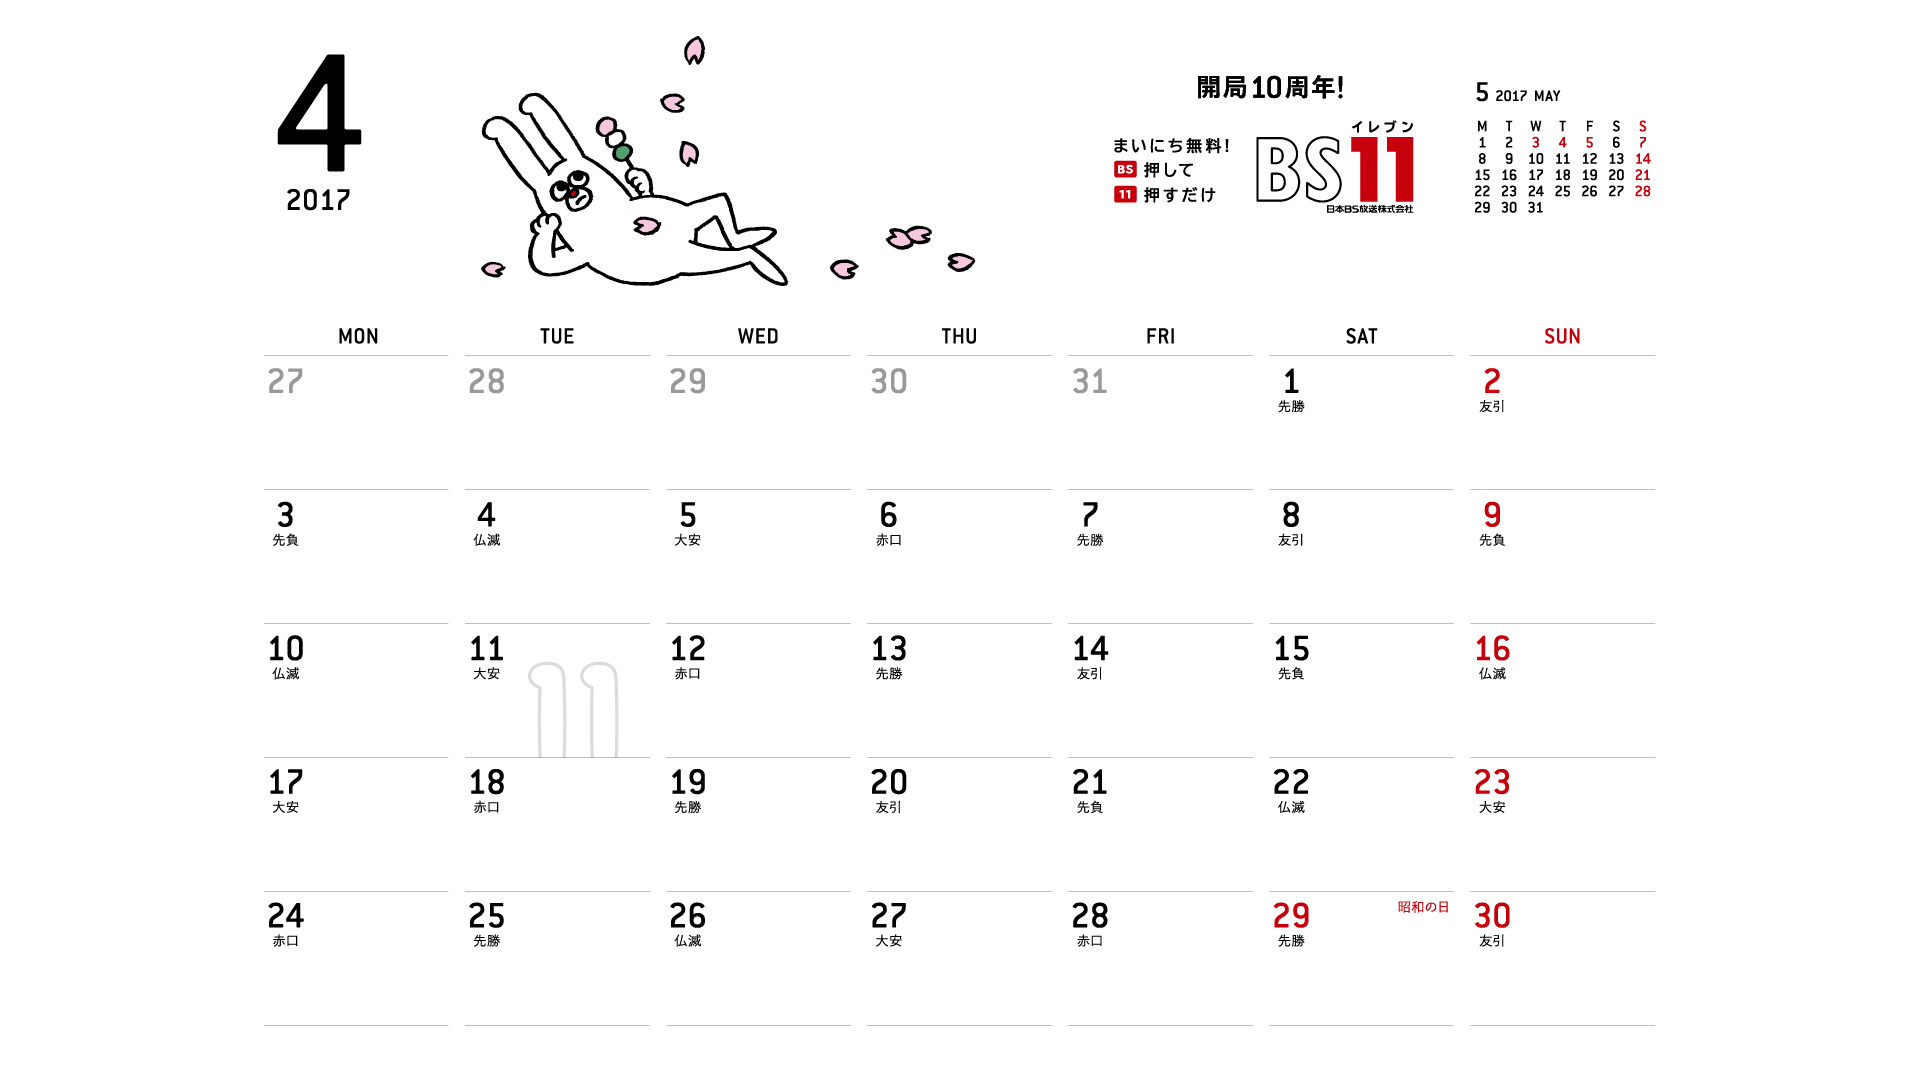 じゅういっちゃんのデジタルカレンダー17年04月 Bs11 イレブン いつでも無料放送